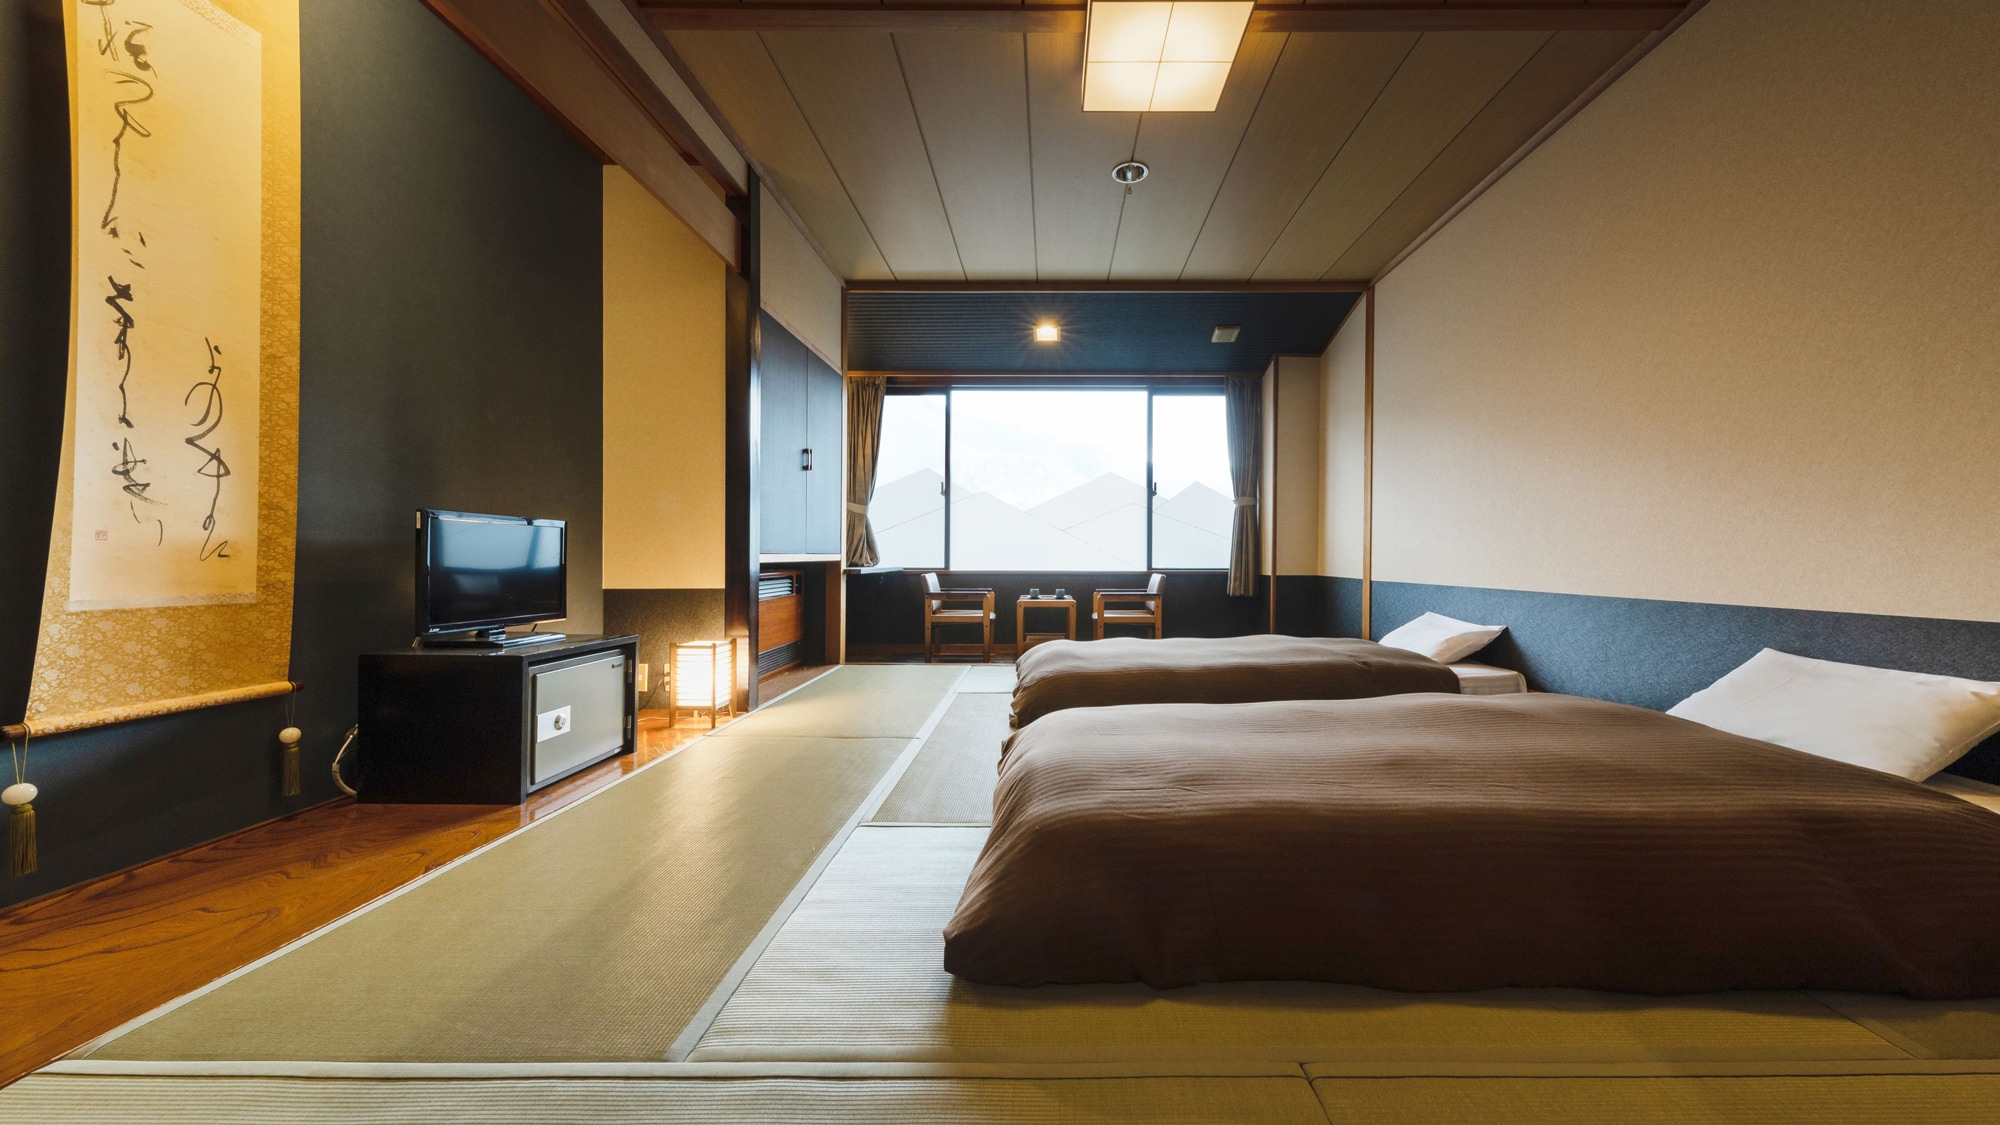 【~여행 클럽~일본식 방 침대・38㎡】 차분한 일본식 공간에서 편히 쉬다